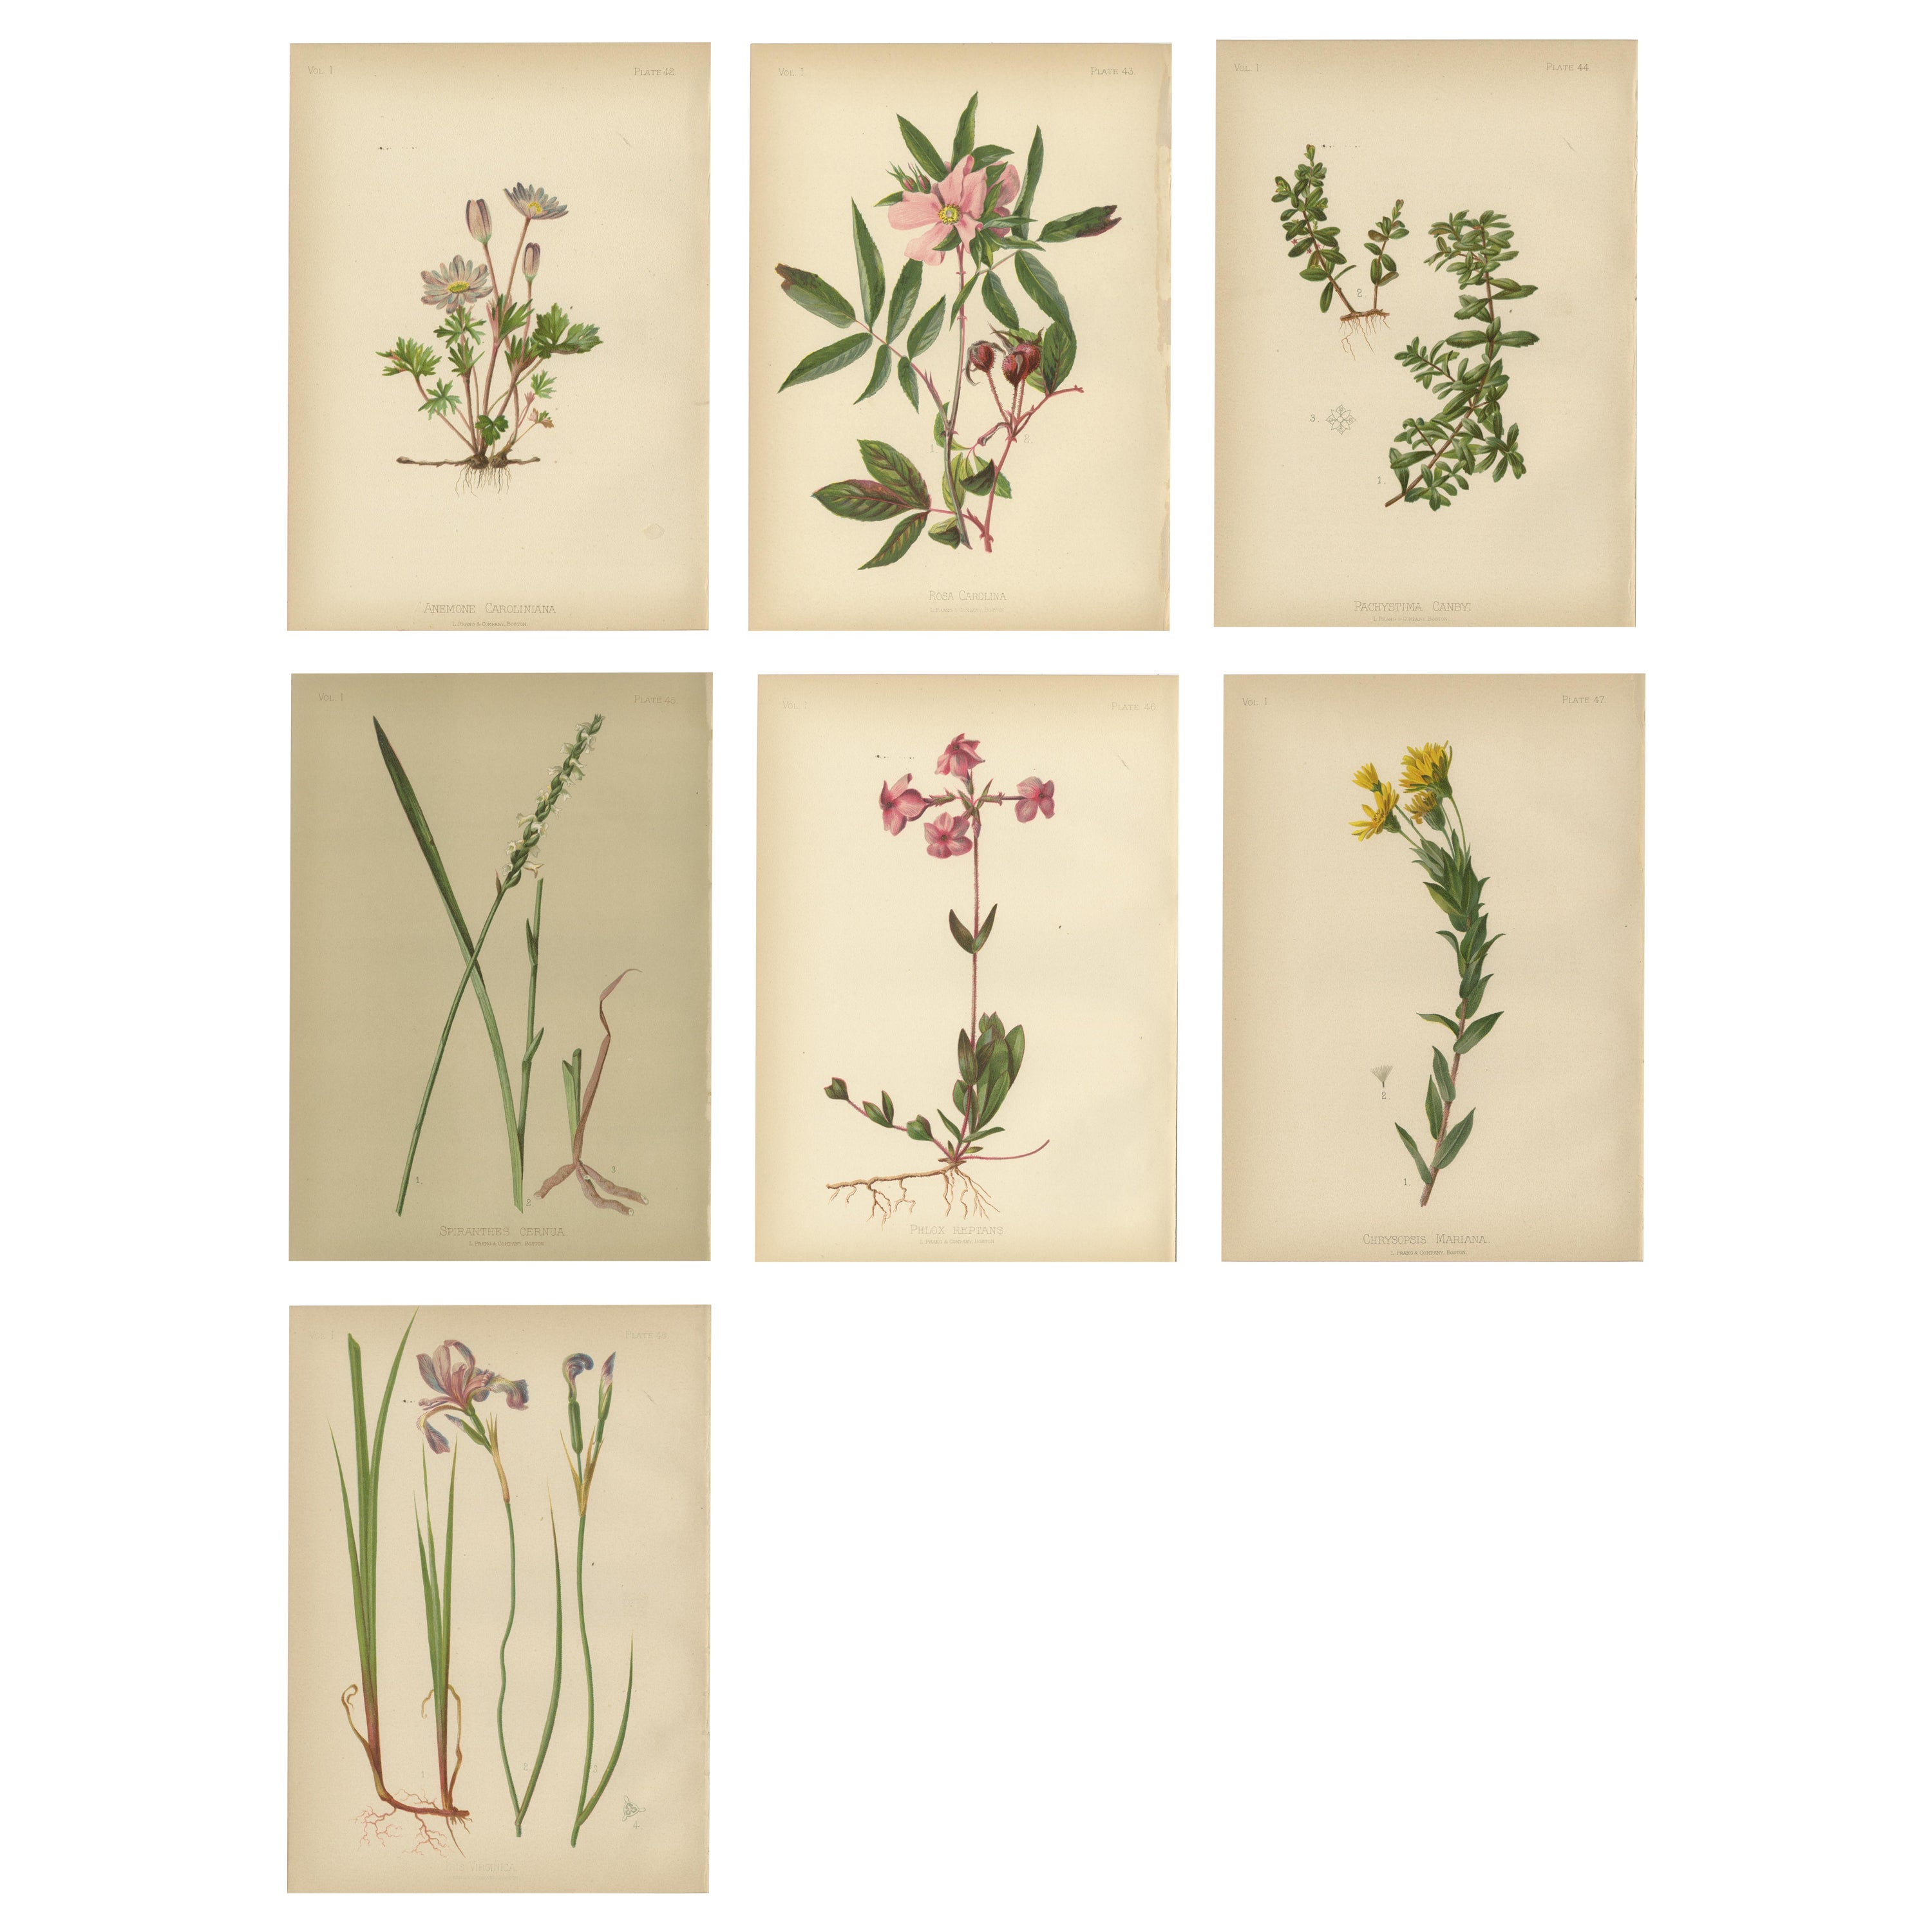 Flora der amerikanischen Ureinwohner der USA – Sieben Original botanische Chromolithograps, 1879